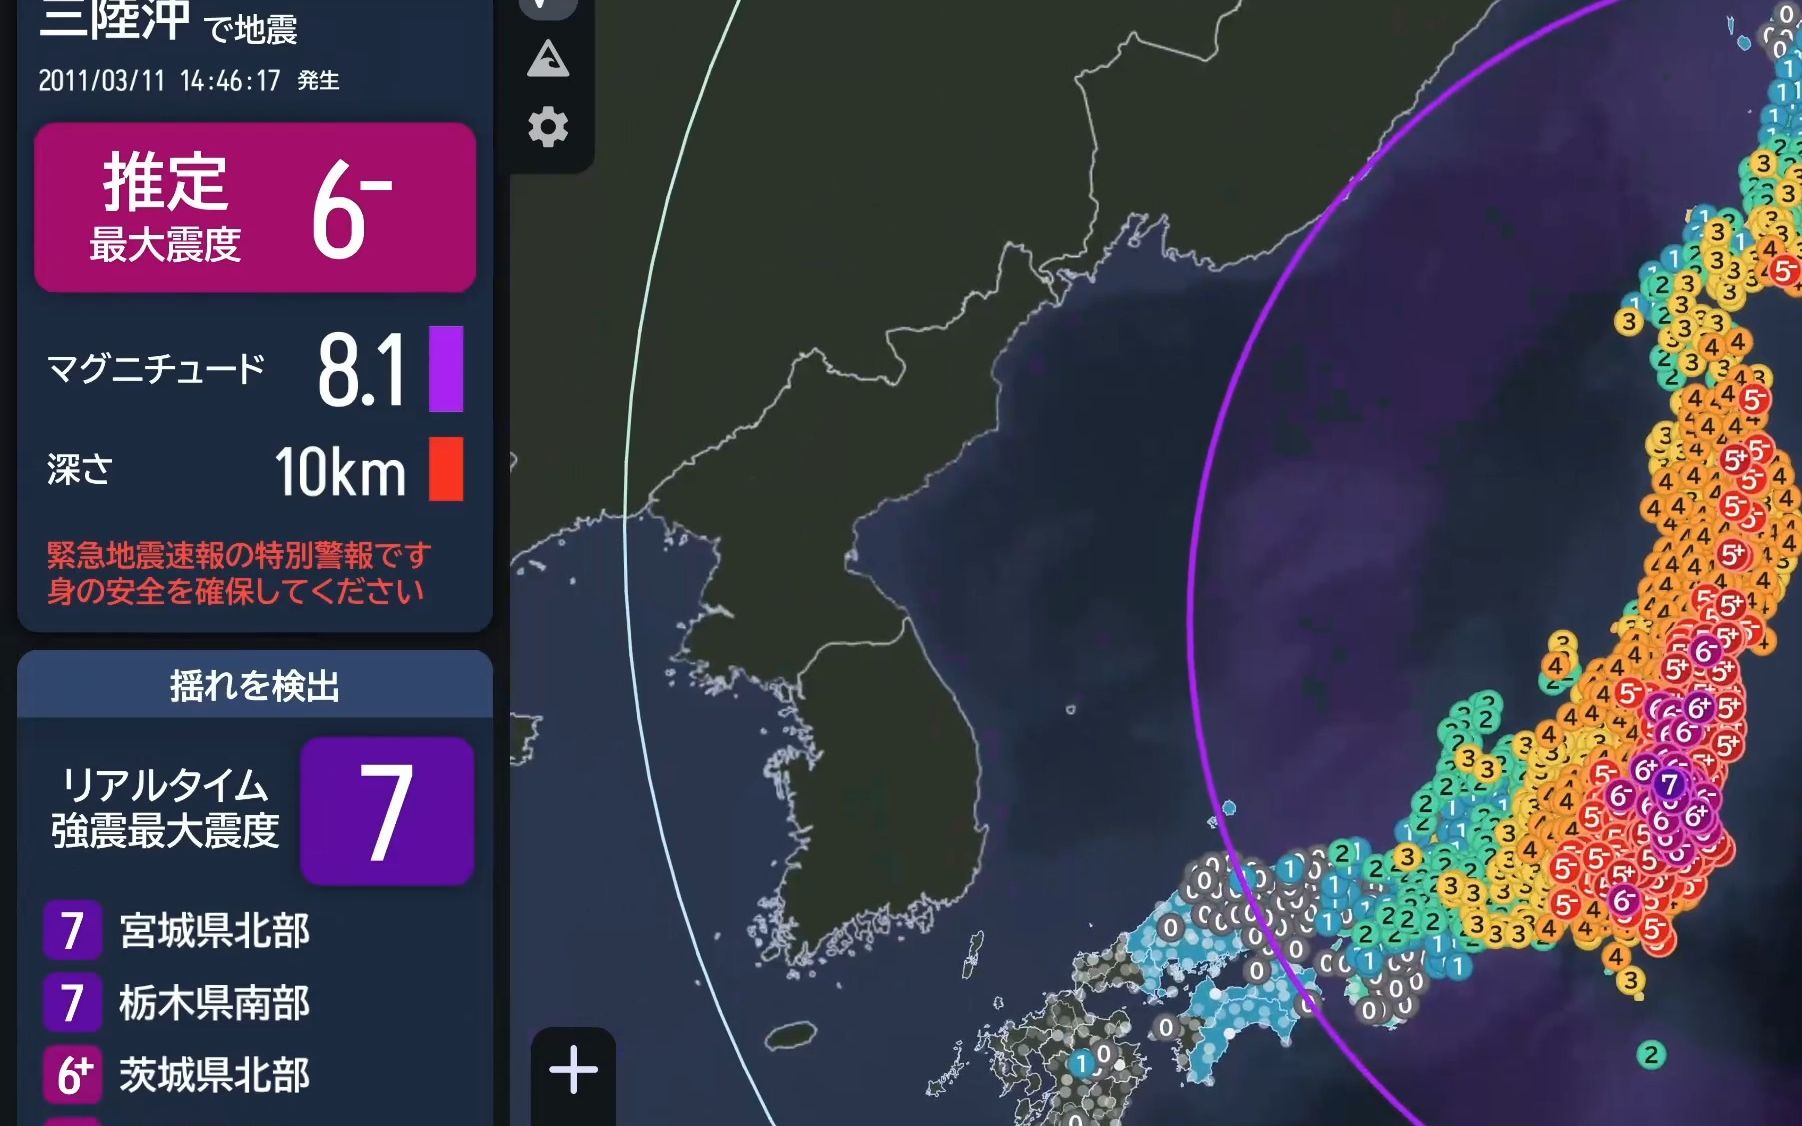 [图]【紧急地震速报/再现】东日本大地震 Mw9.1 最大震度7 2011/03/11 14:46发生